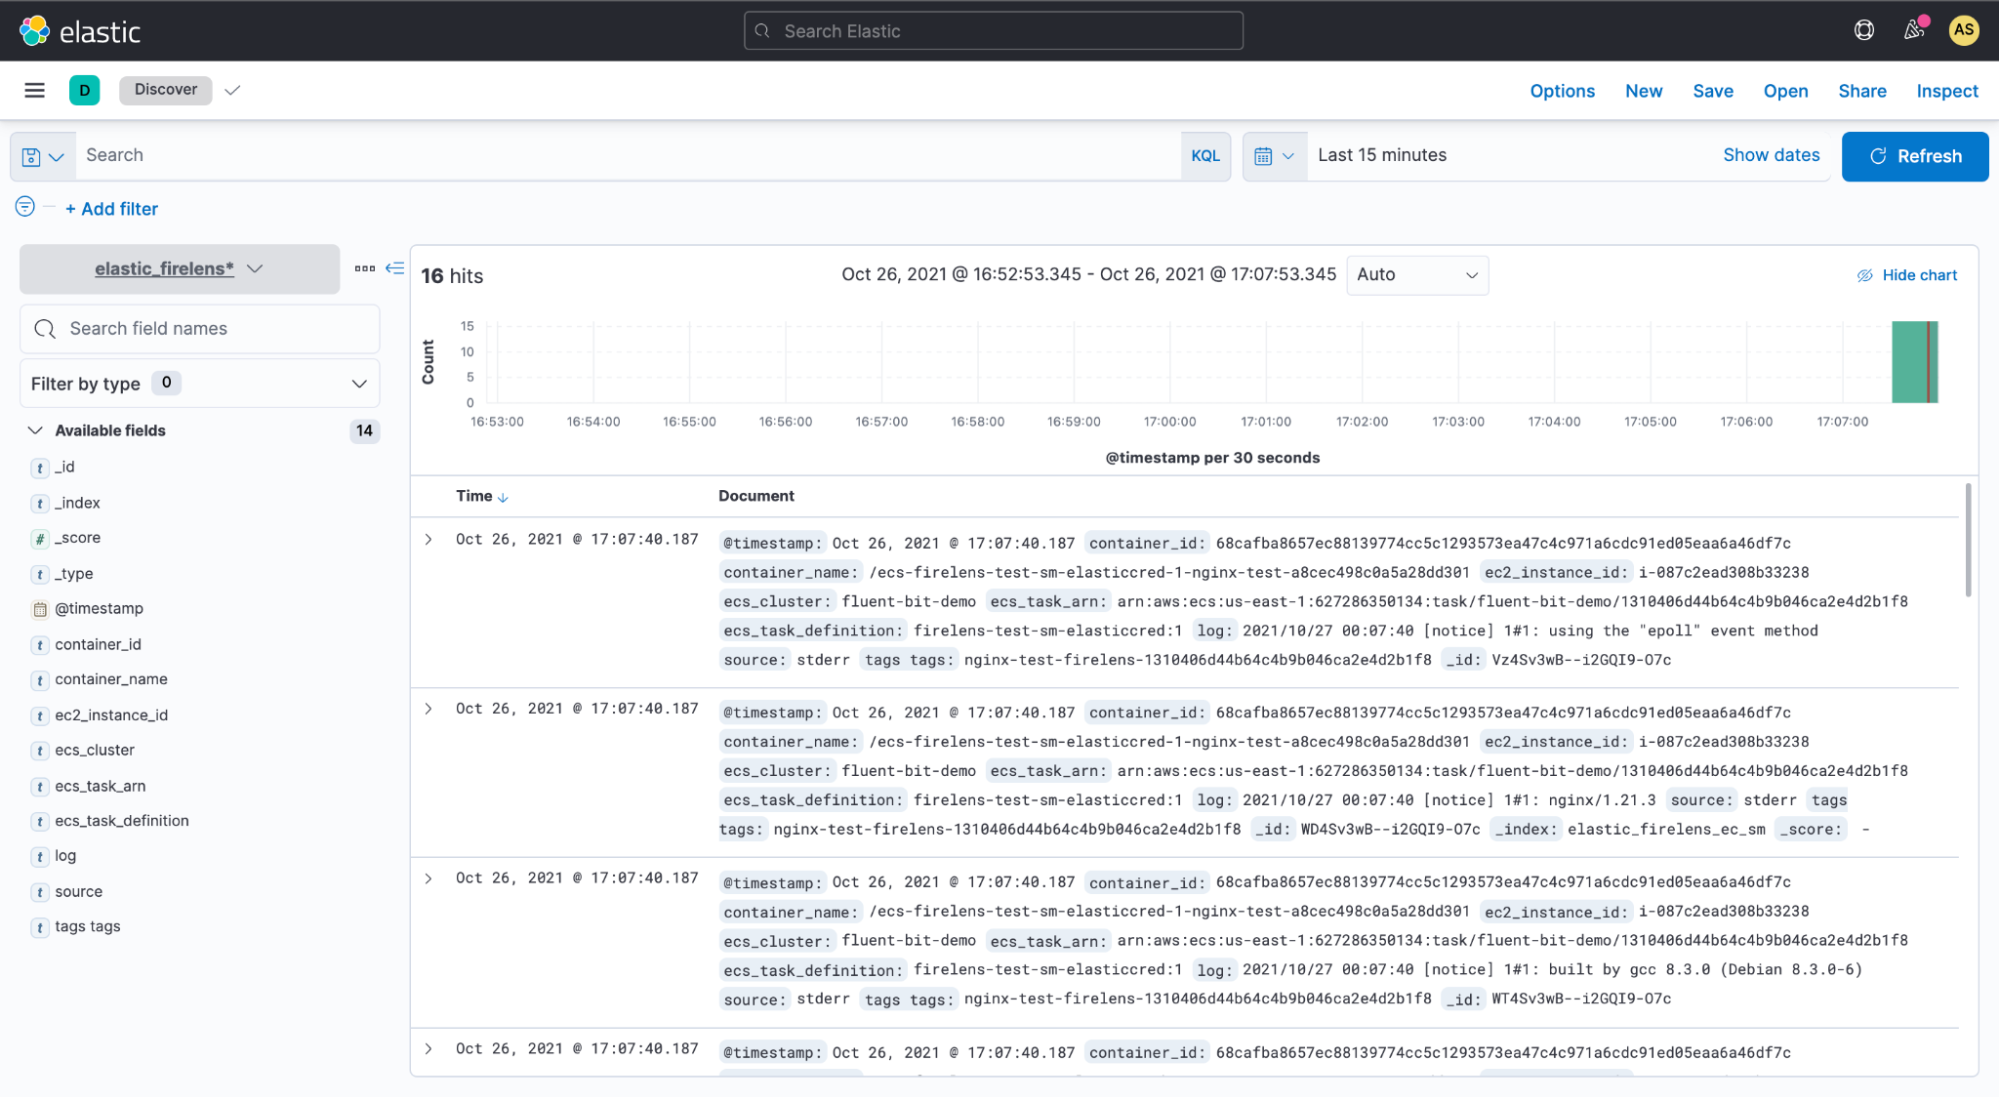 Quando o serviço começar a ser executado, você poderá ver o fluxo de logs para o Elasticsearch por meio do Kibana. A imagem abaixo mostra uma execução de consulta na Elastic que pode ser visualizada no Kibana.